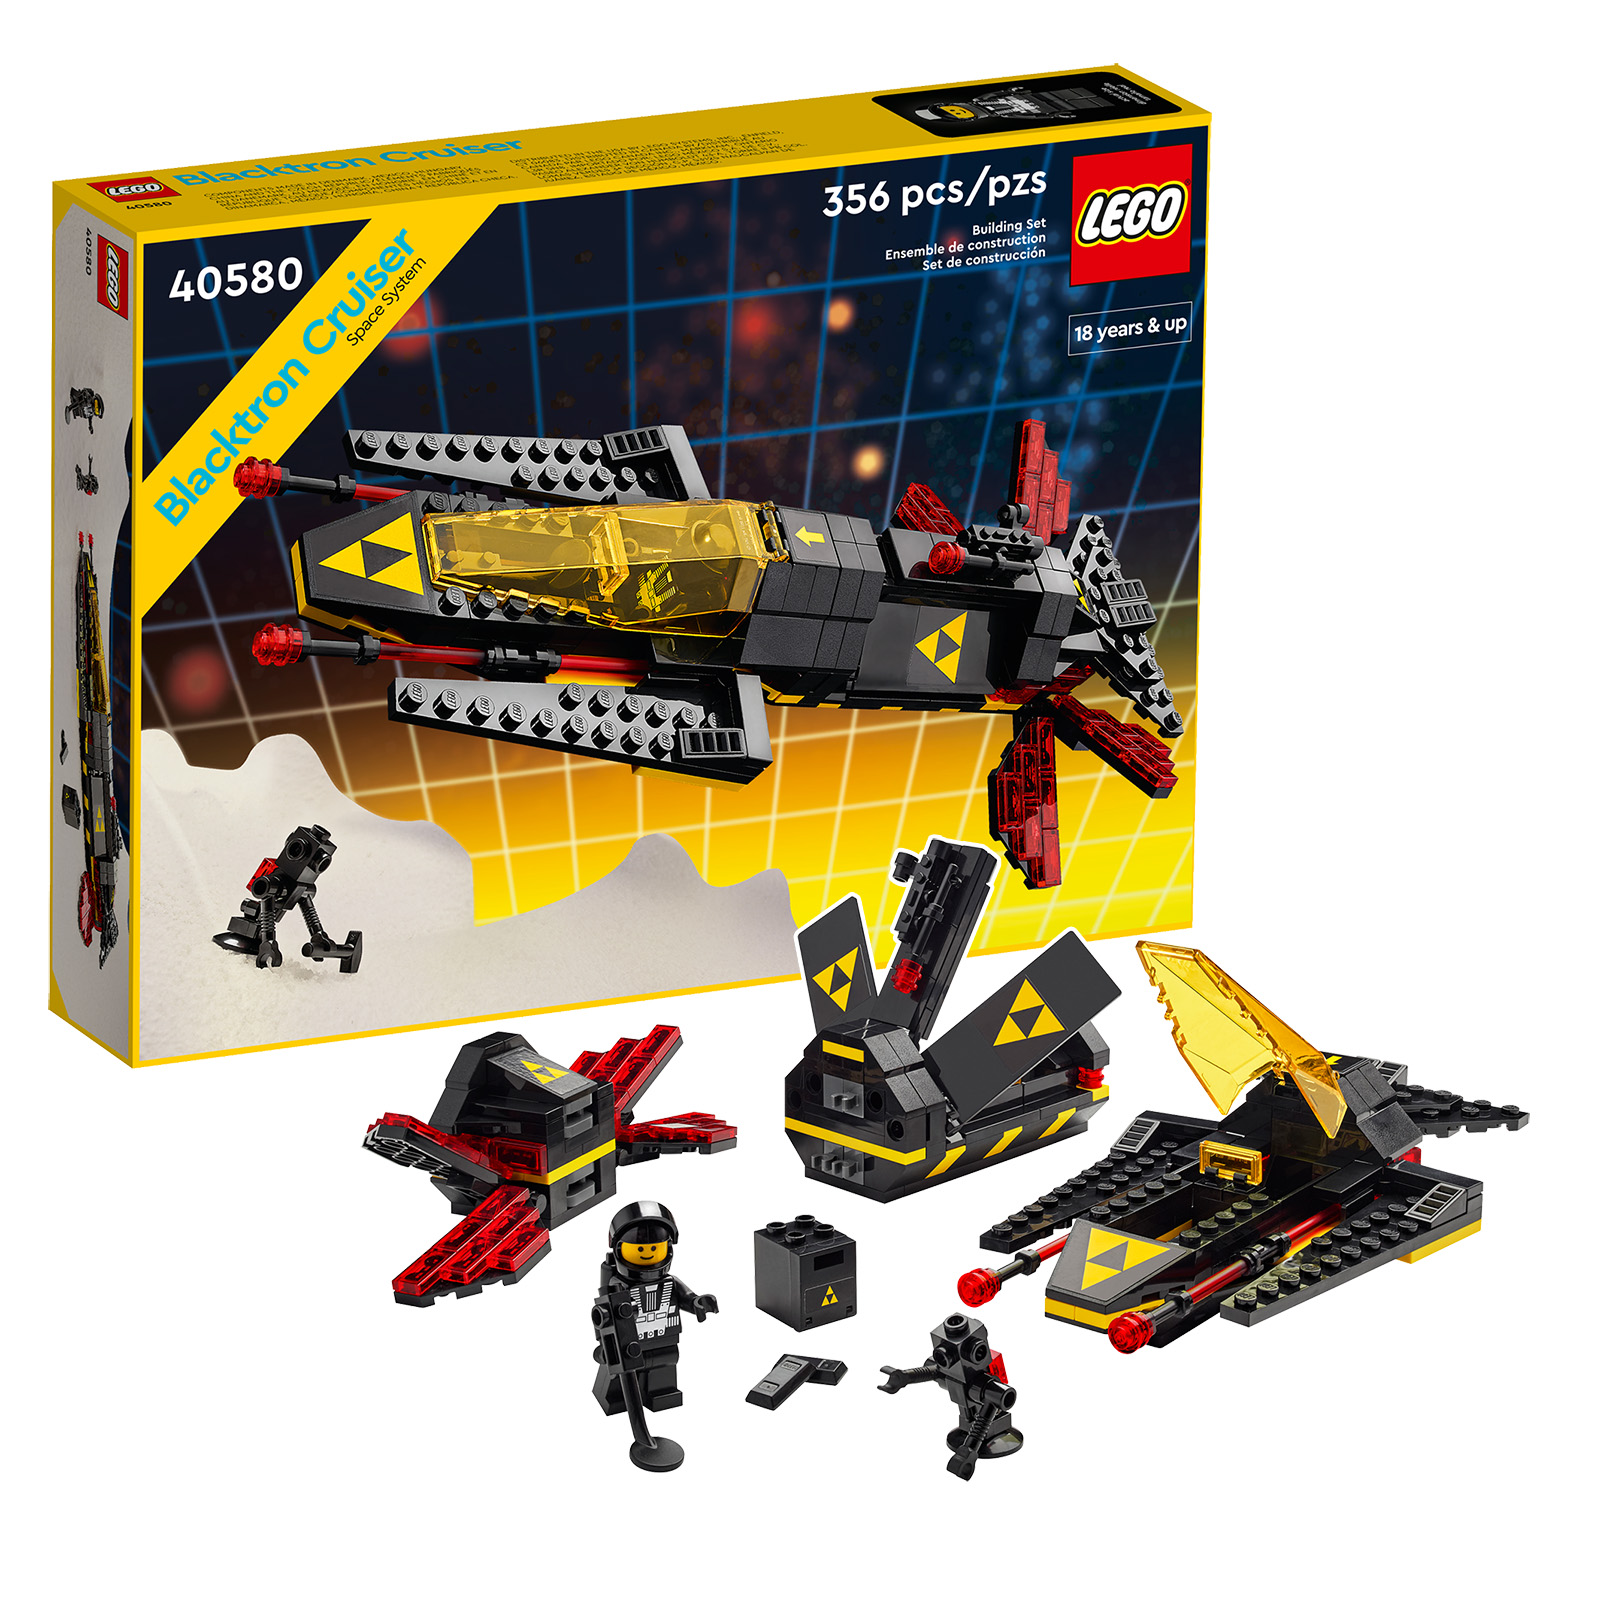 V trgovini LEGO Shop: zadnje ure, da dobite komplet 40580 Blacktron Cruiser brezplačno od 190 € od nakupa